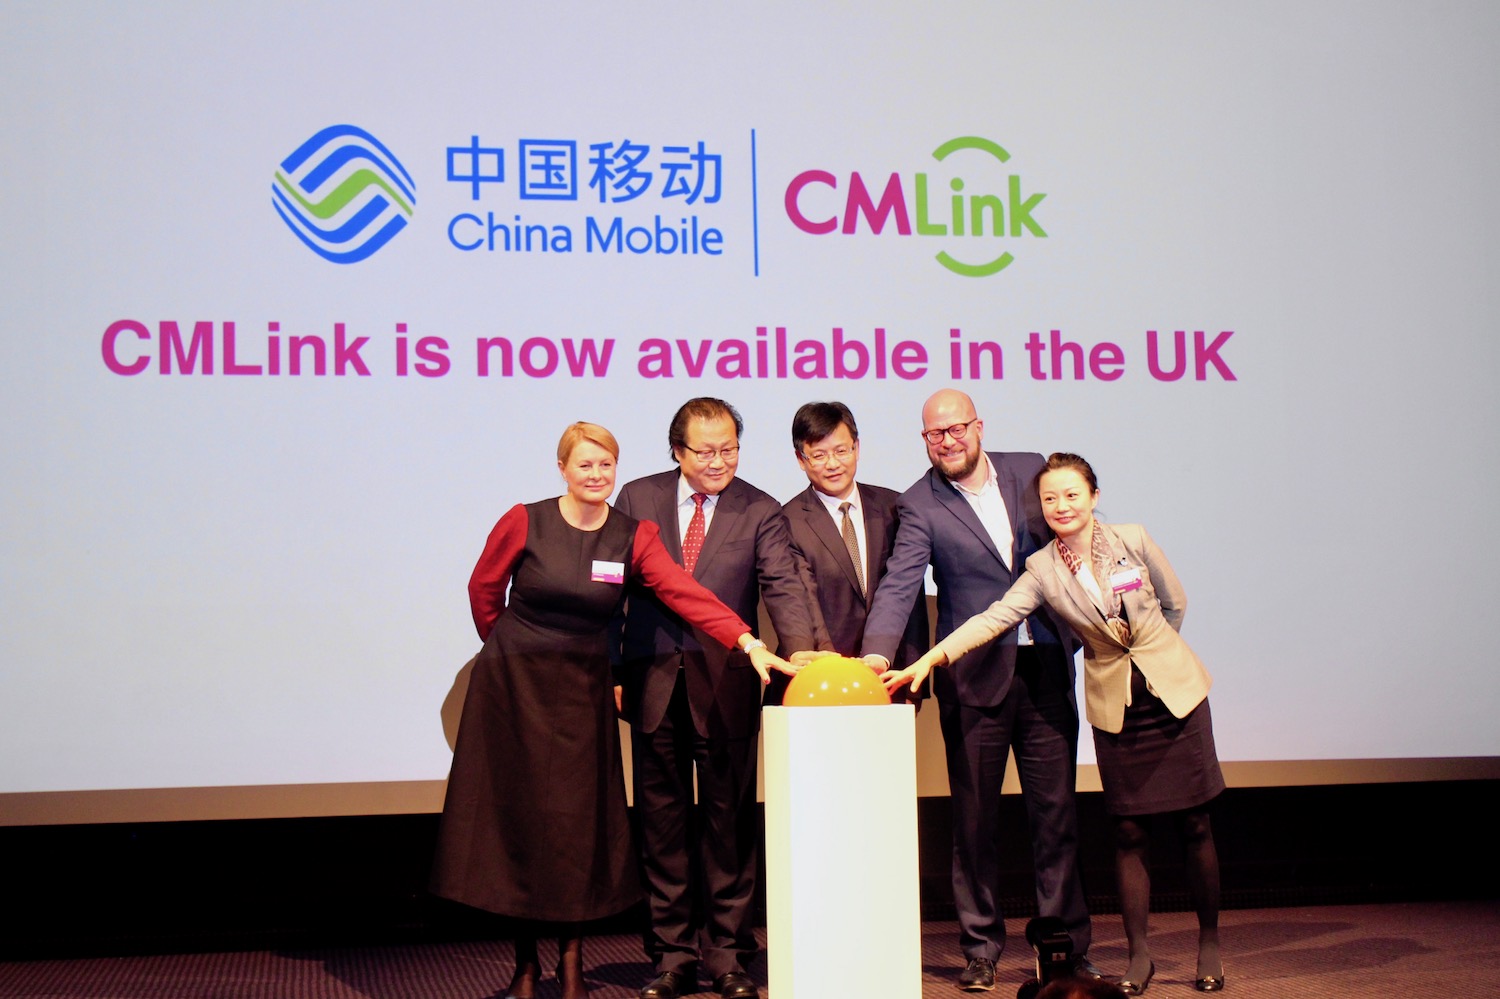 china mobile cmlink news uk